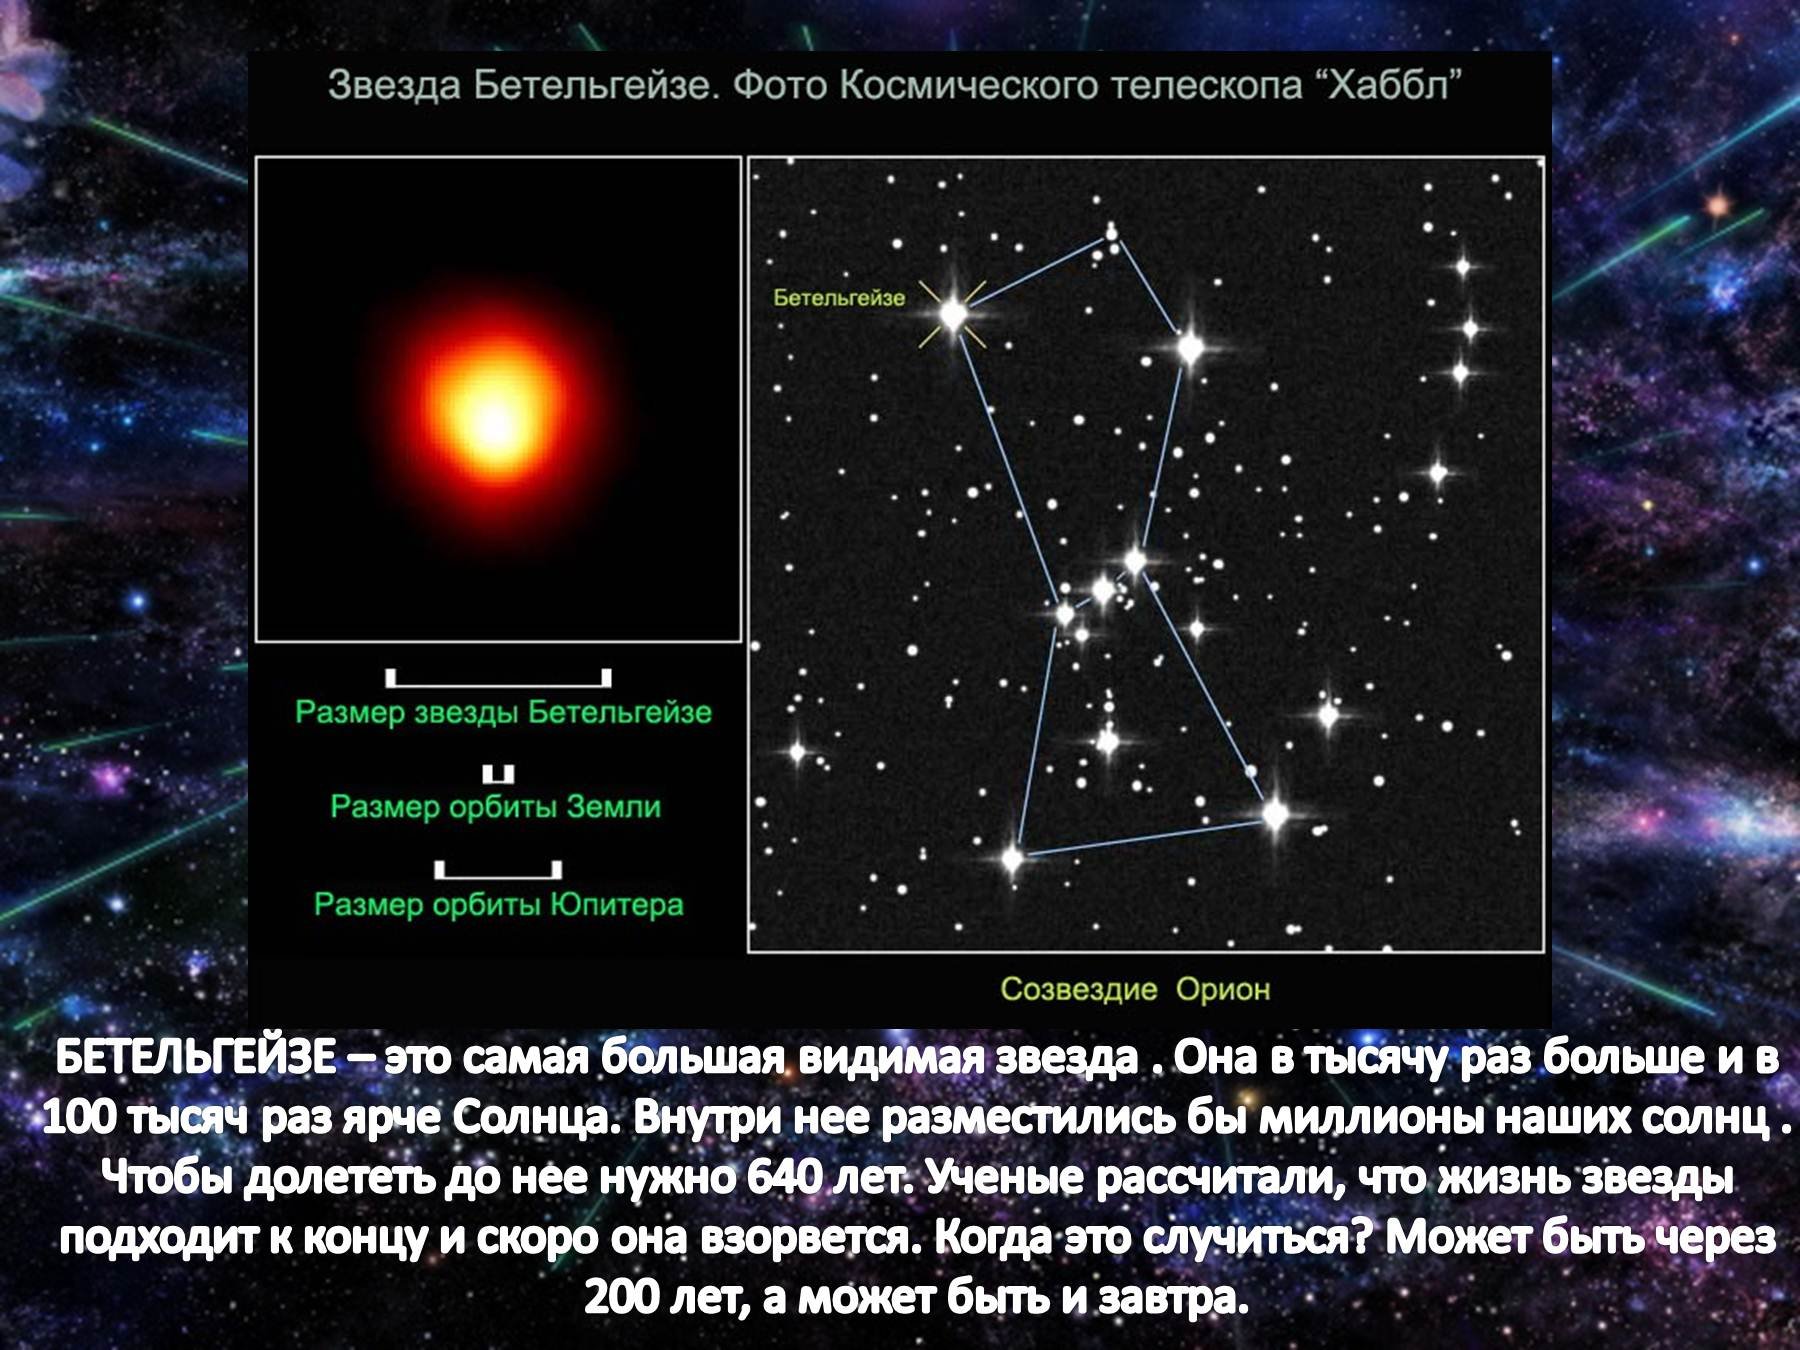 Созвездие звездная величина. Звезда Бетельгейзе Галактика. Орион Бетельгейзе. Факты о звезде Бетельгейзе. Класс звезды Бетельгейзе.